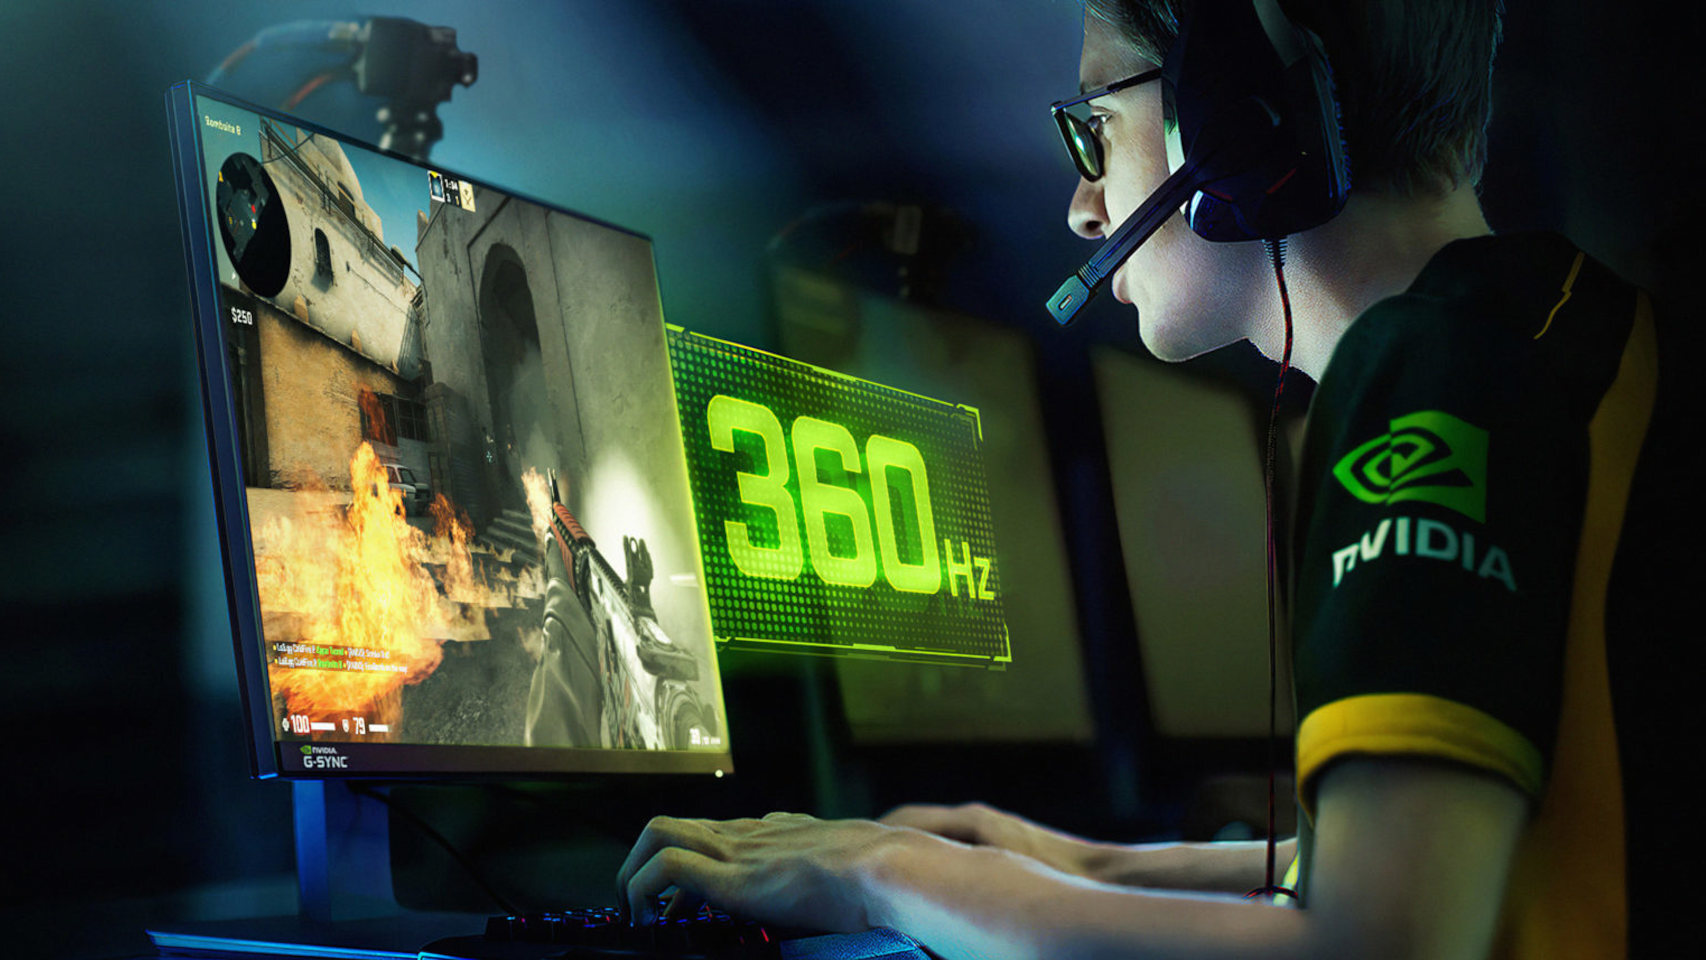 El monitor más rápido del mundo: alcanza los 360 Hz gracias a lo nuevo de Nvidia